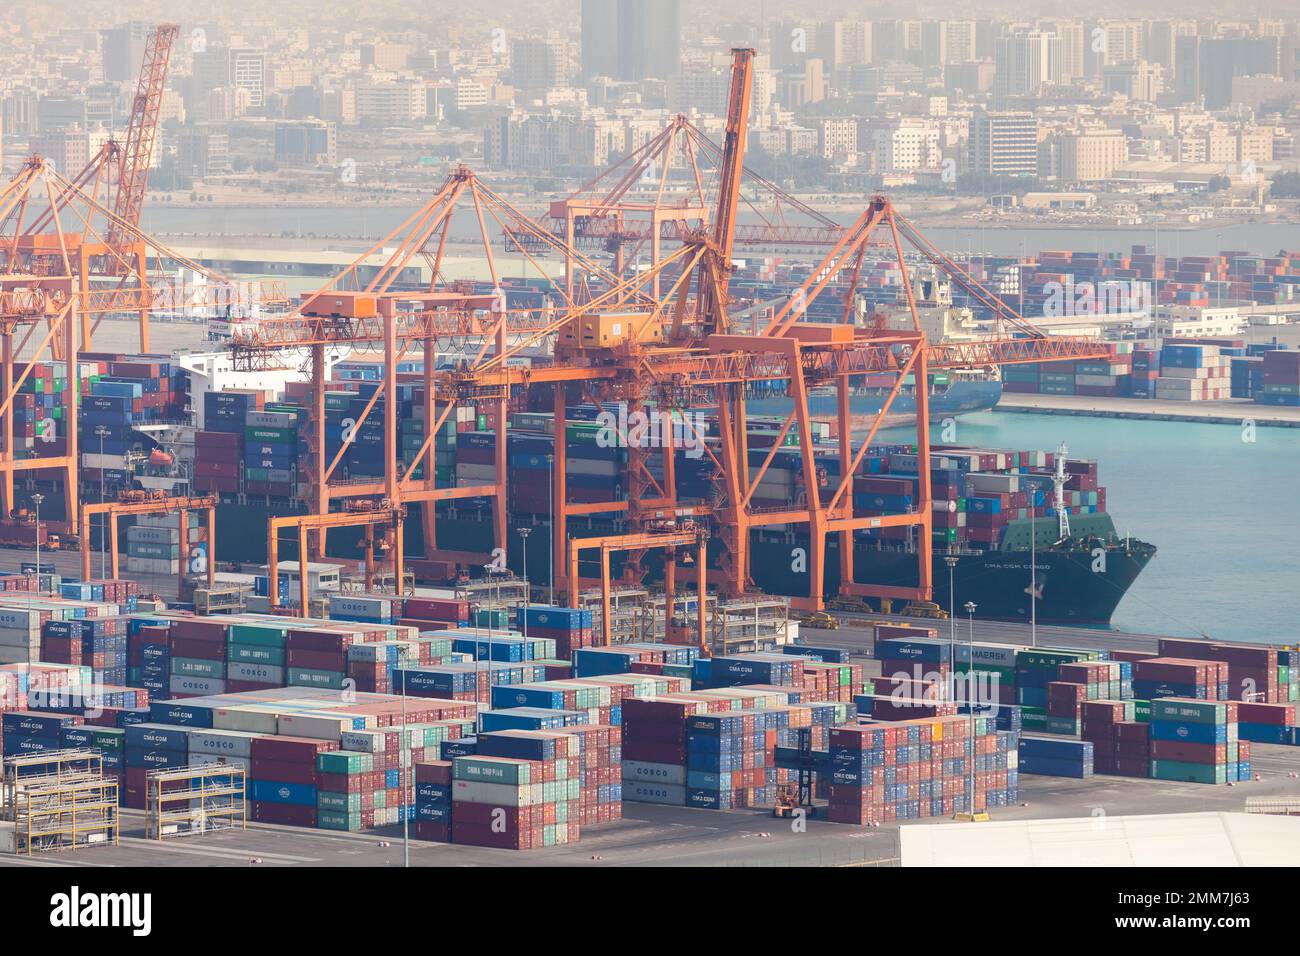 Jeddah, Arabia Saudita - 22 dicembre 2019: Caricamento della nave container al terminal container del porto marittimo islamico di Jeddah Foto Stock